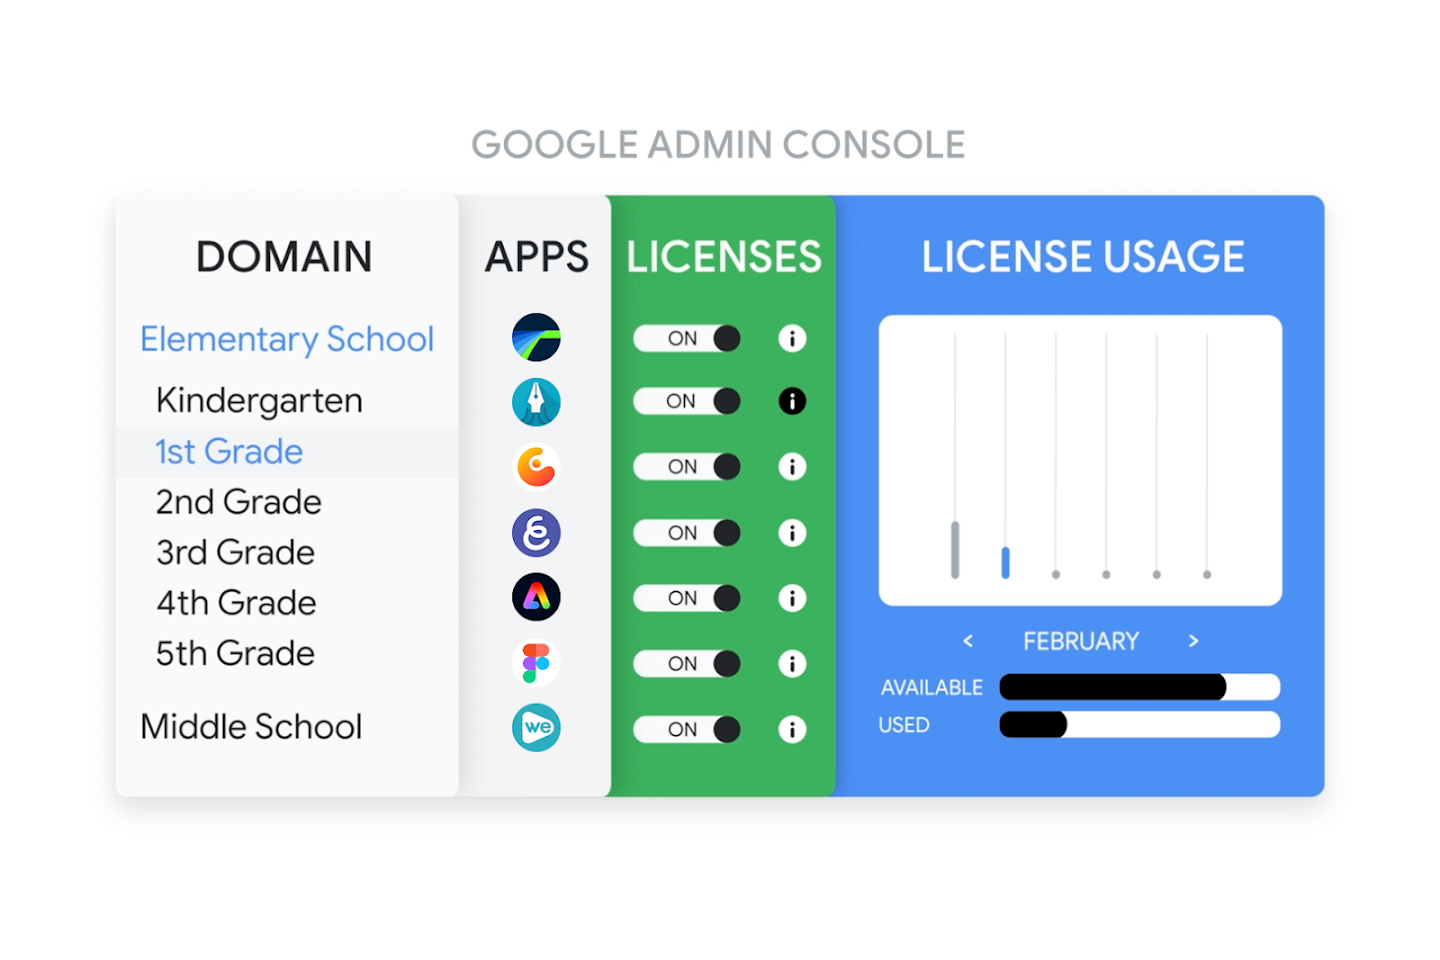 Imagem mostrando o licenciamento de apps no Google Admin Console com apps sendo provisionados para um estudante